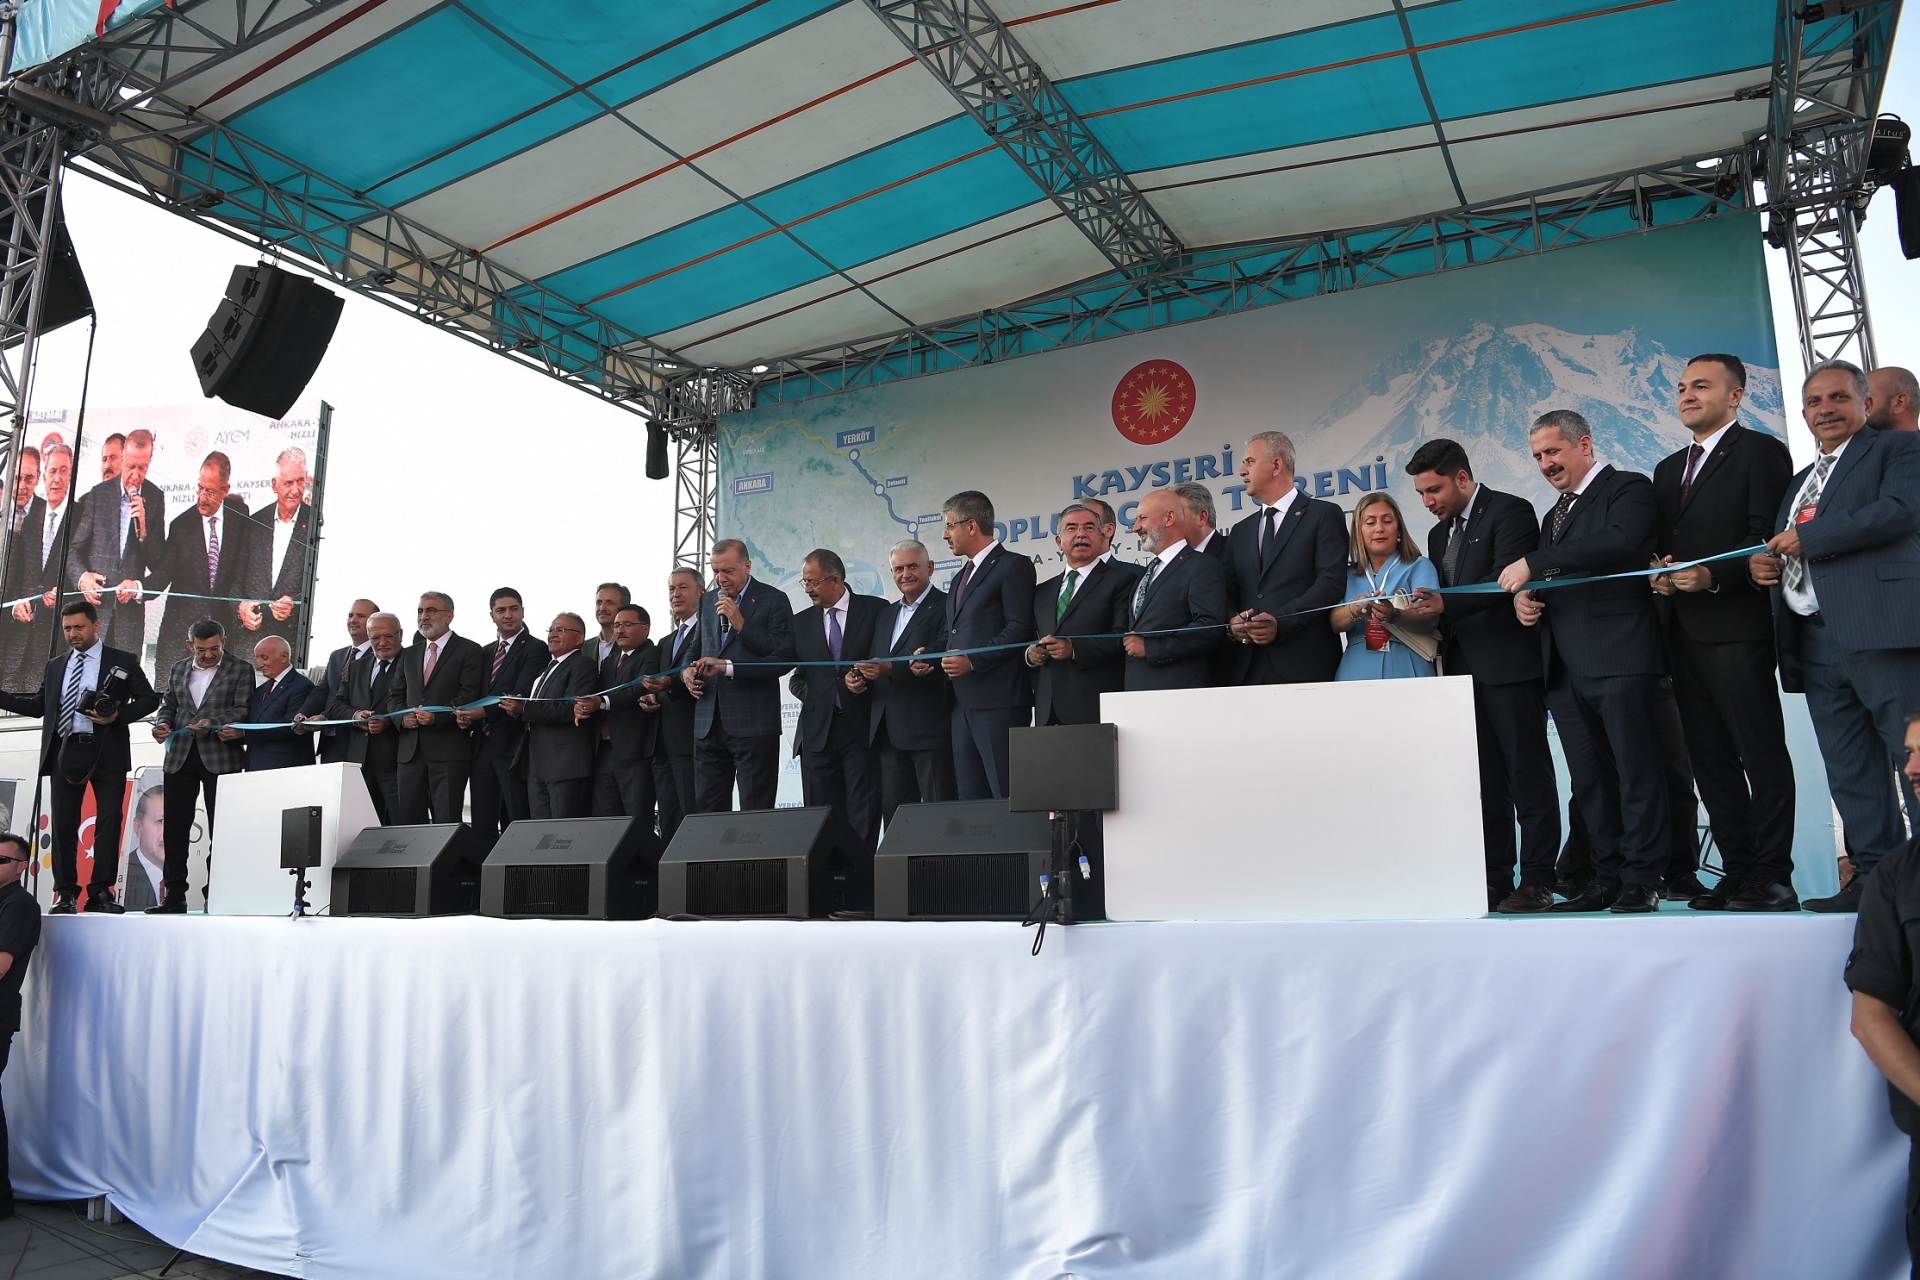 İşte Cumhurbaşkanı Erdoğan’ın Açılışını Yaptığı Büyükşehir’in 3 Milyar 788 Milyon TL’lik Yatırımları